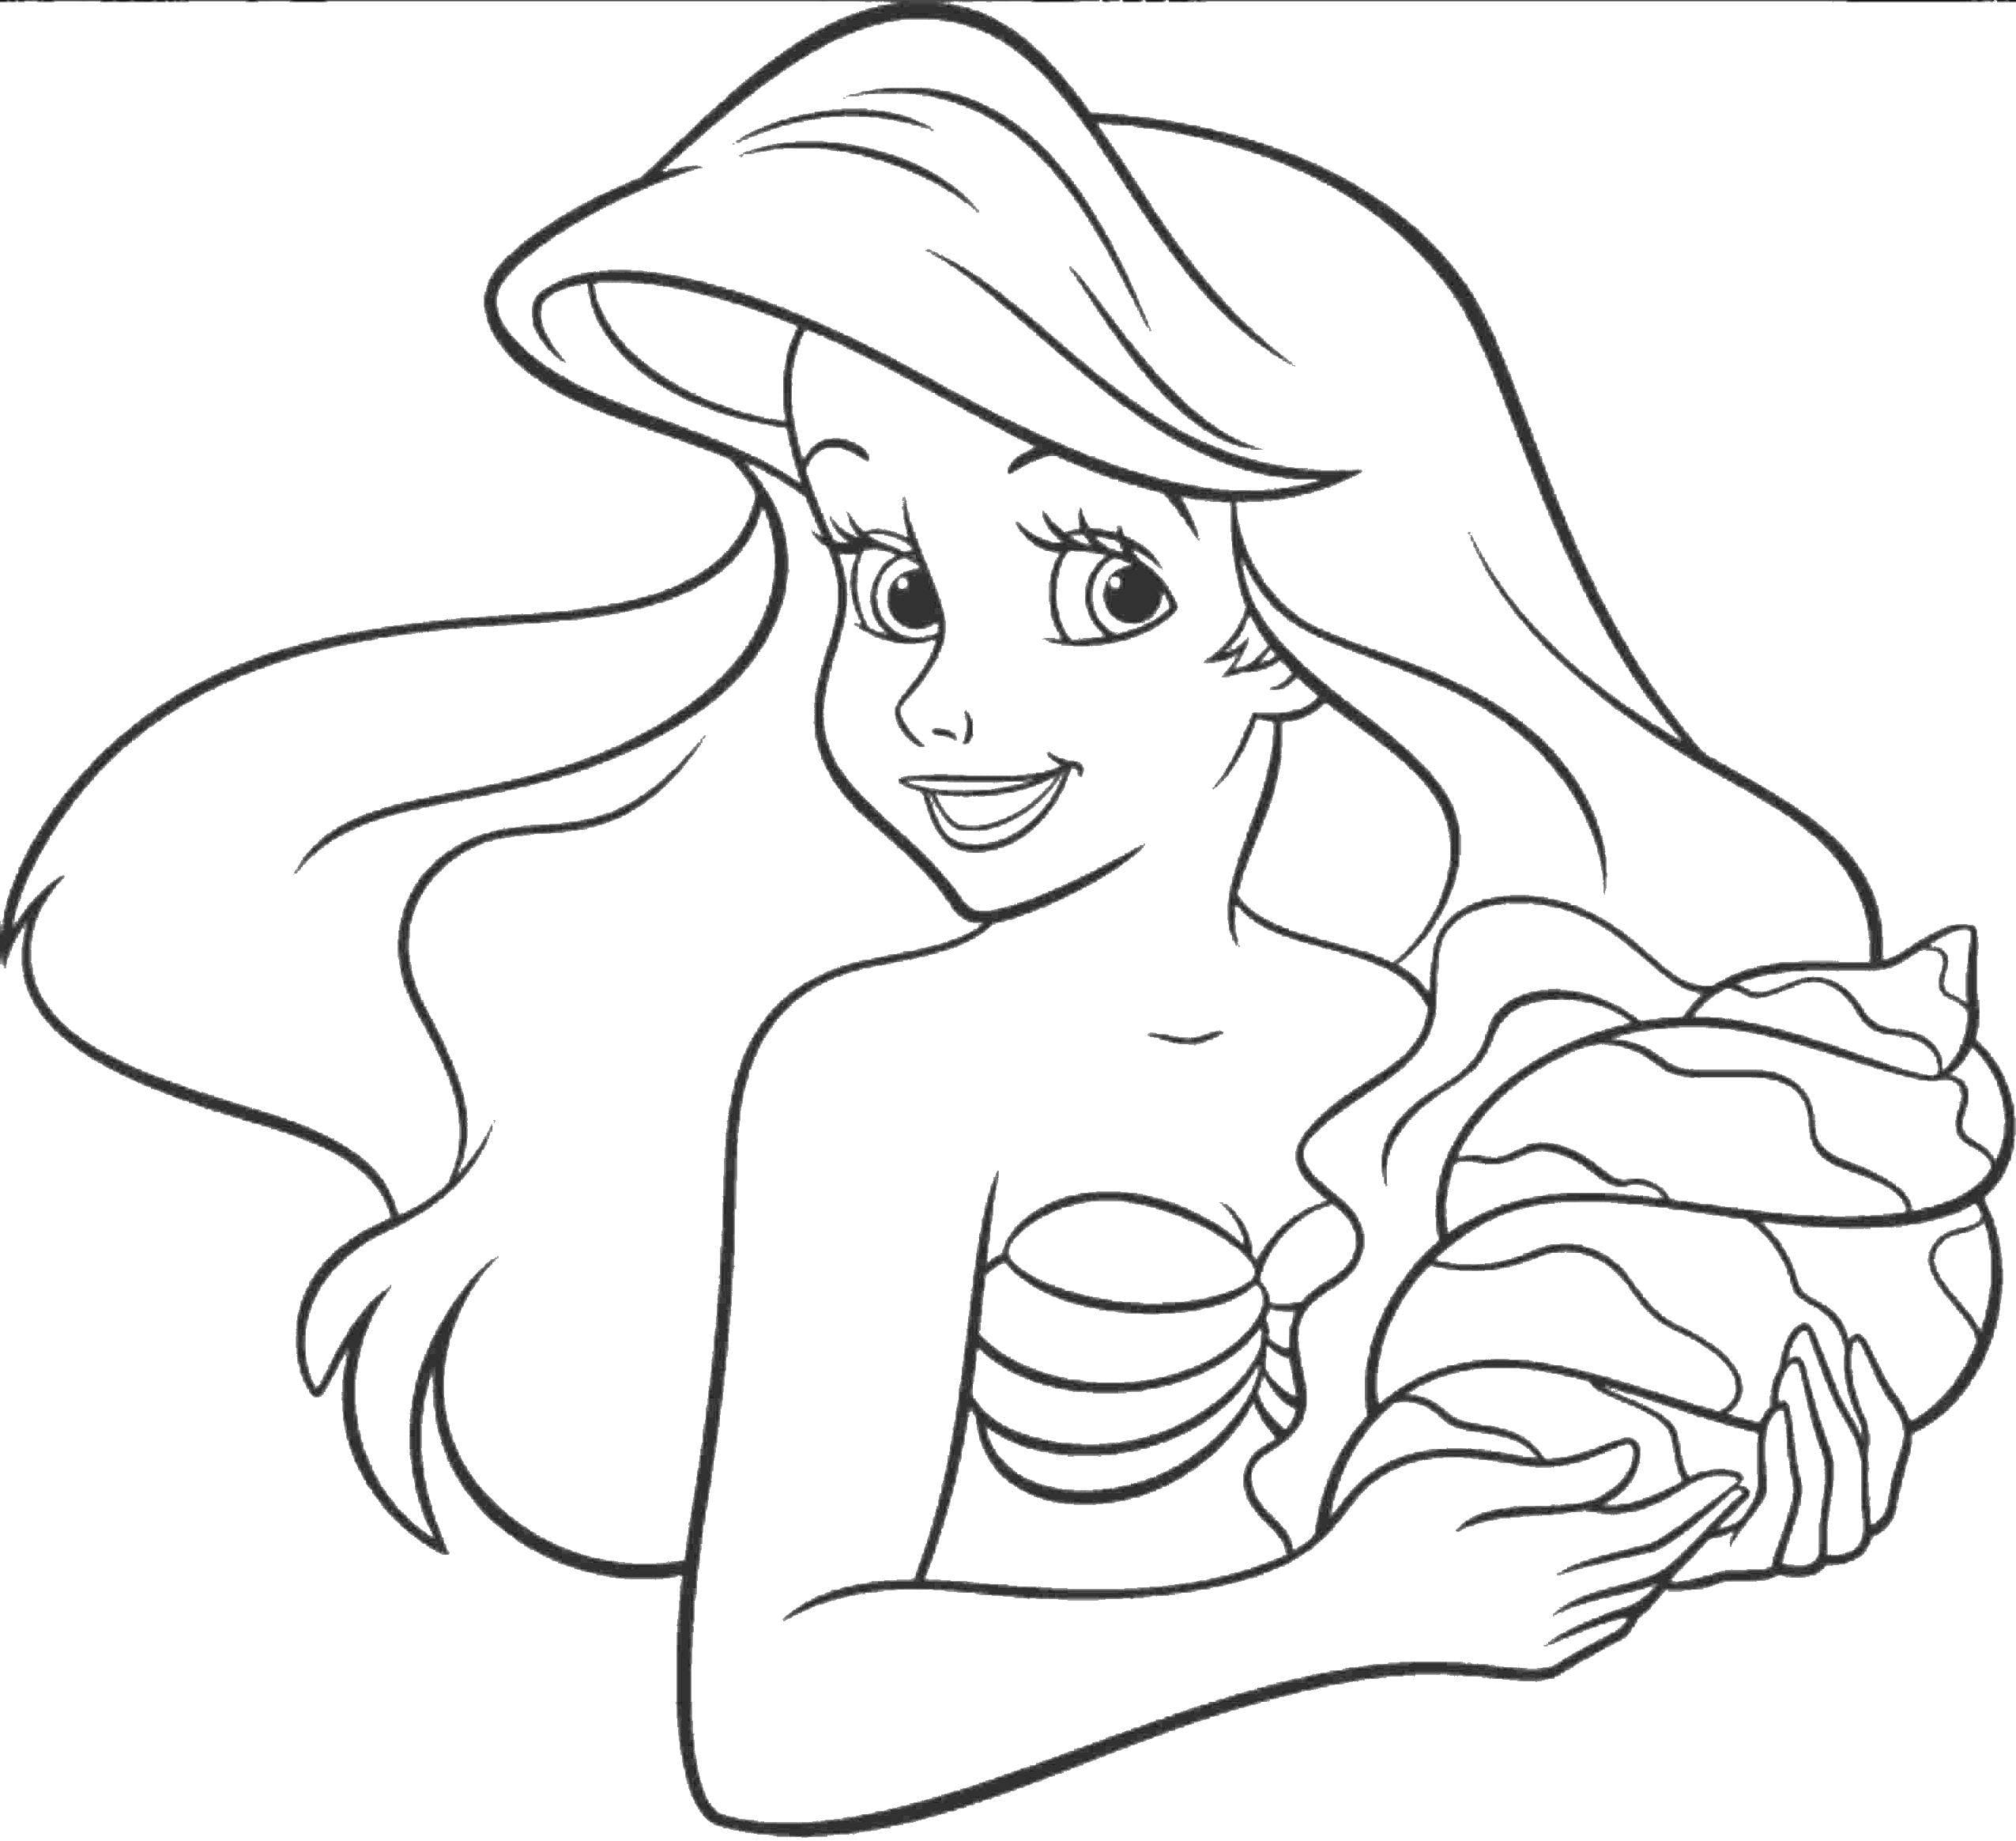 Dibujos para colorear de Ariel la sirenita